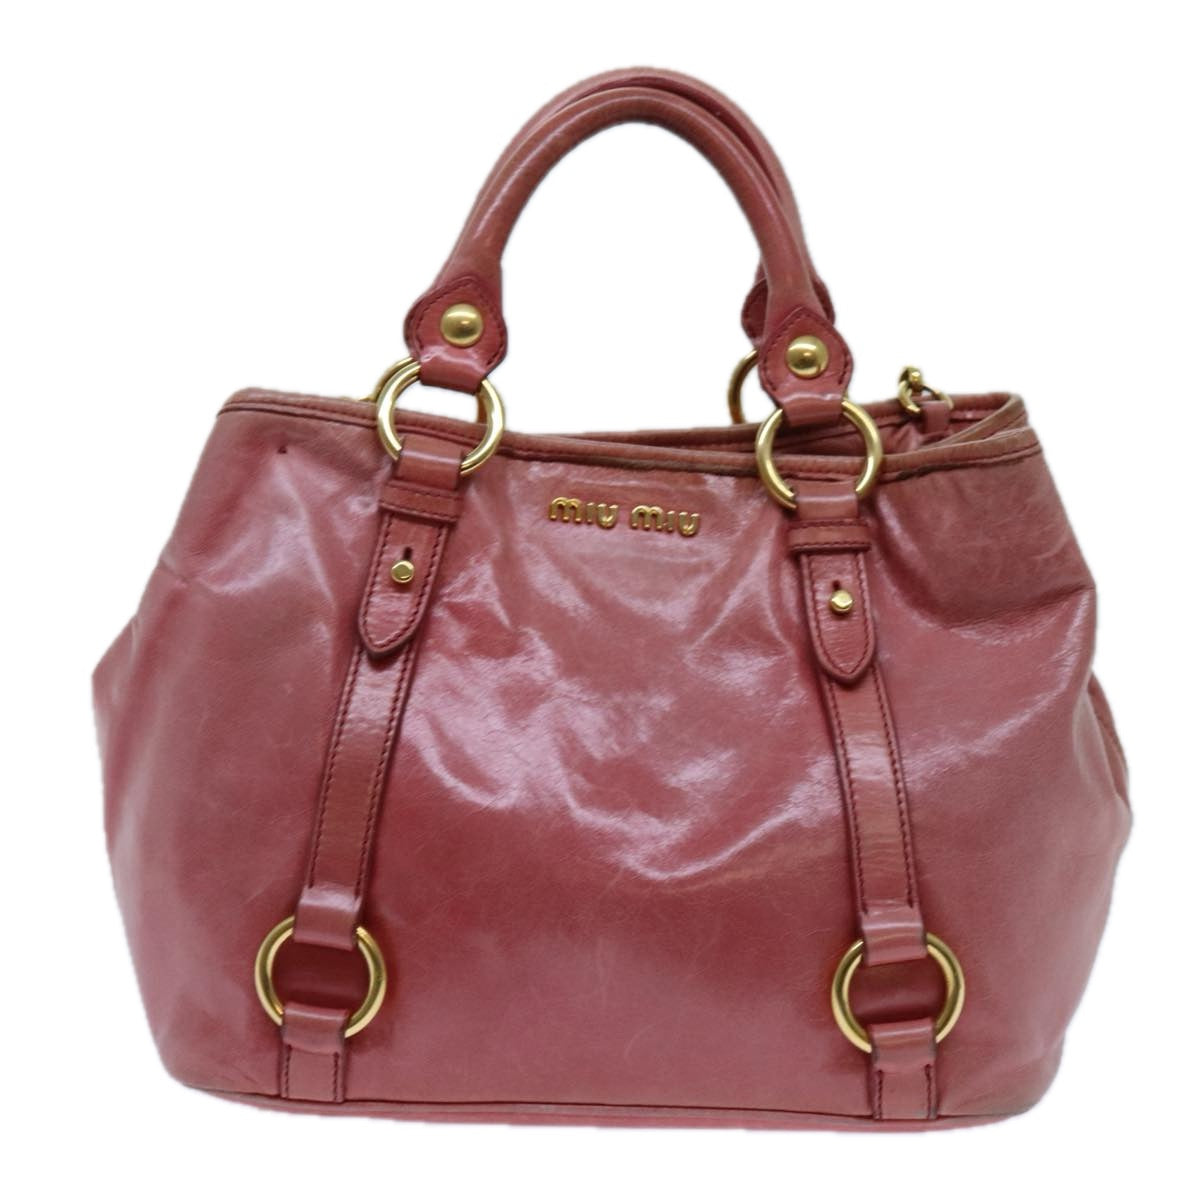 Miu Miu Hand Bag Leather 2way Pink Auth hk1215 - 0